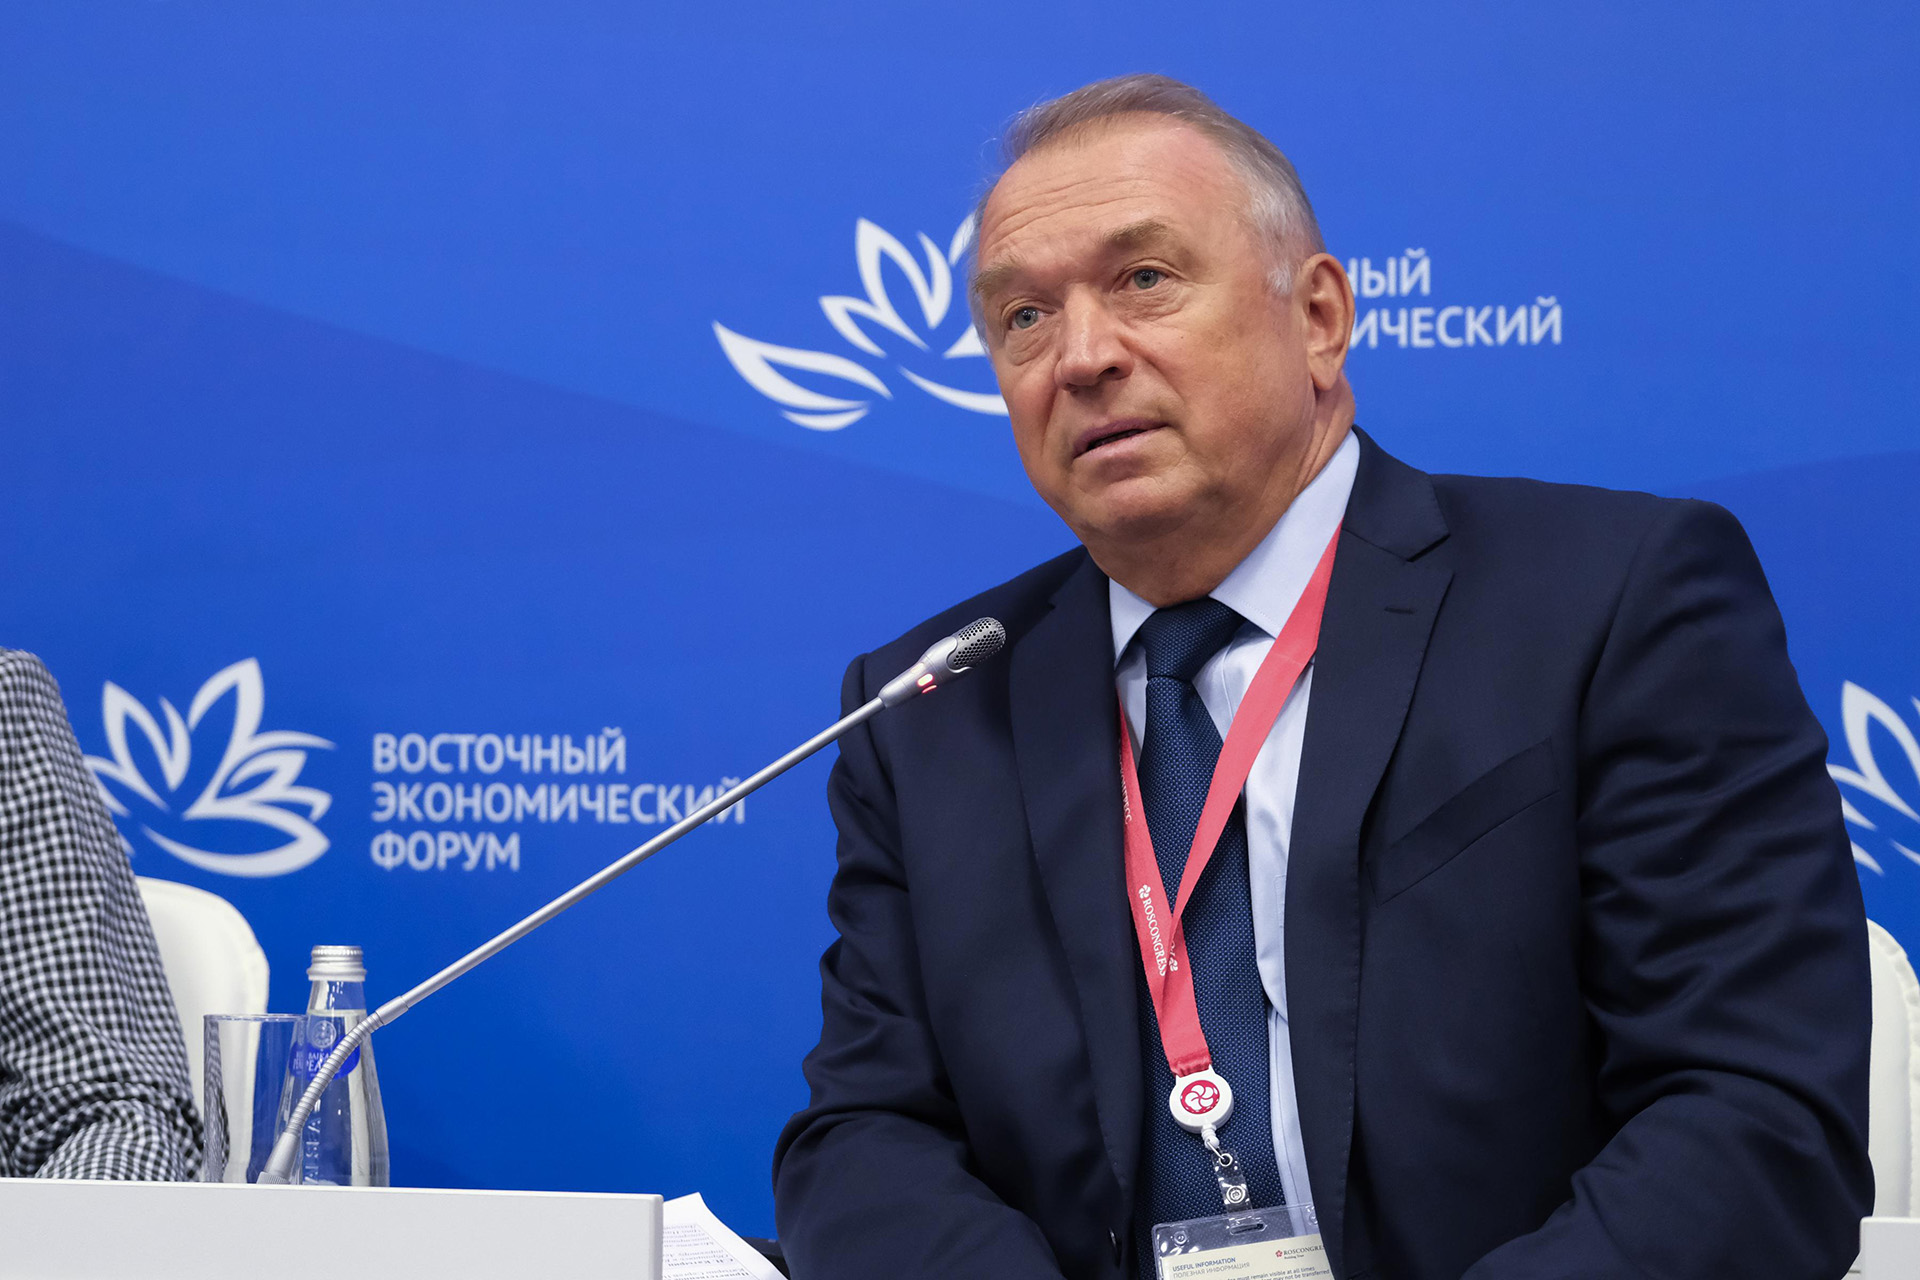 Сергей Николаевич Катырин